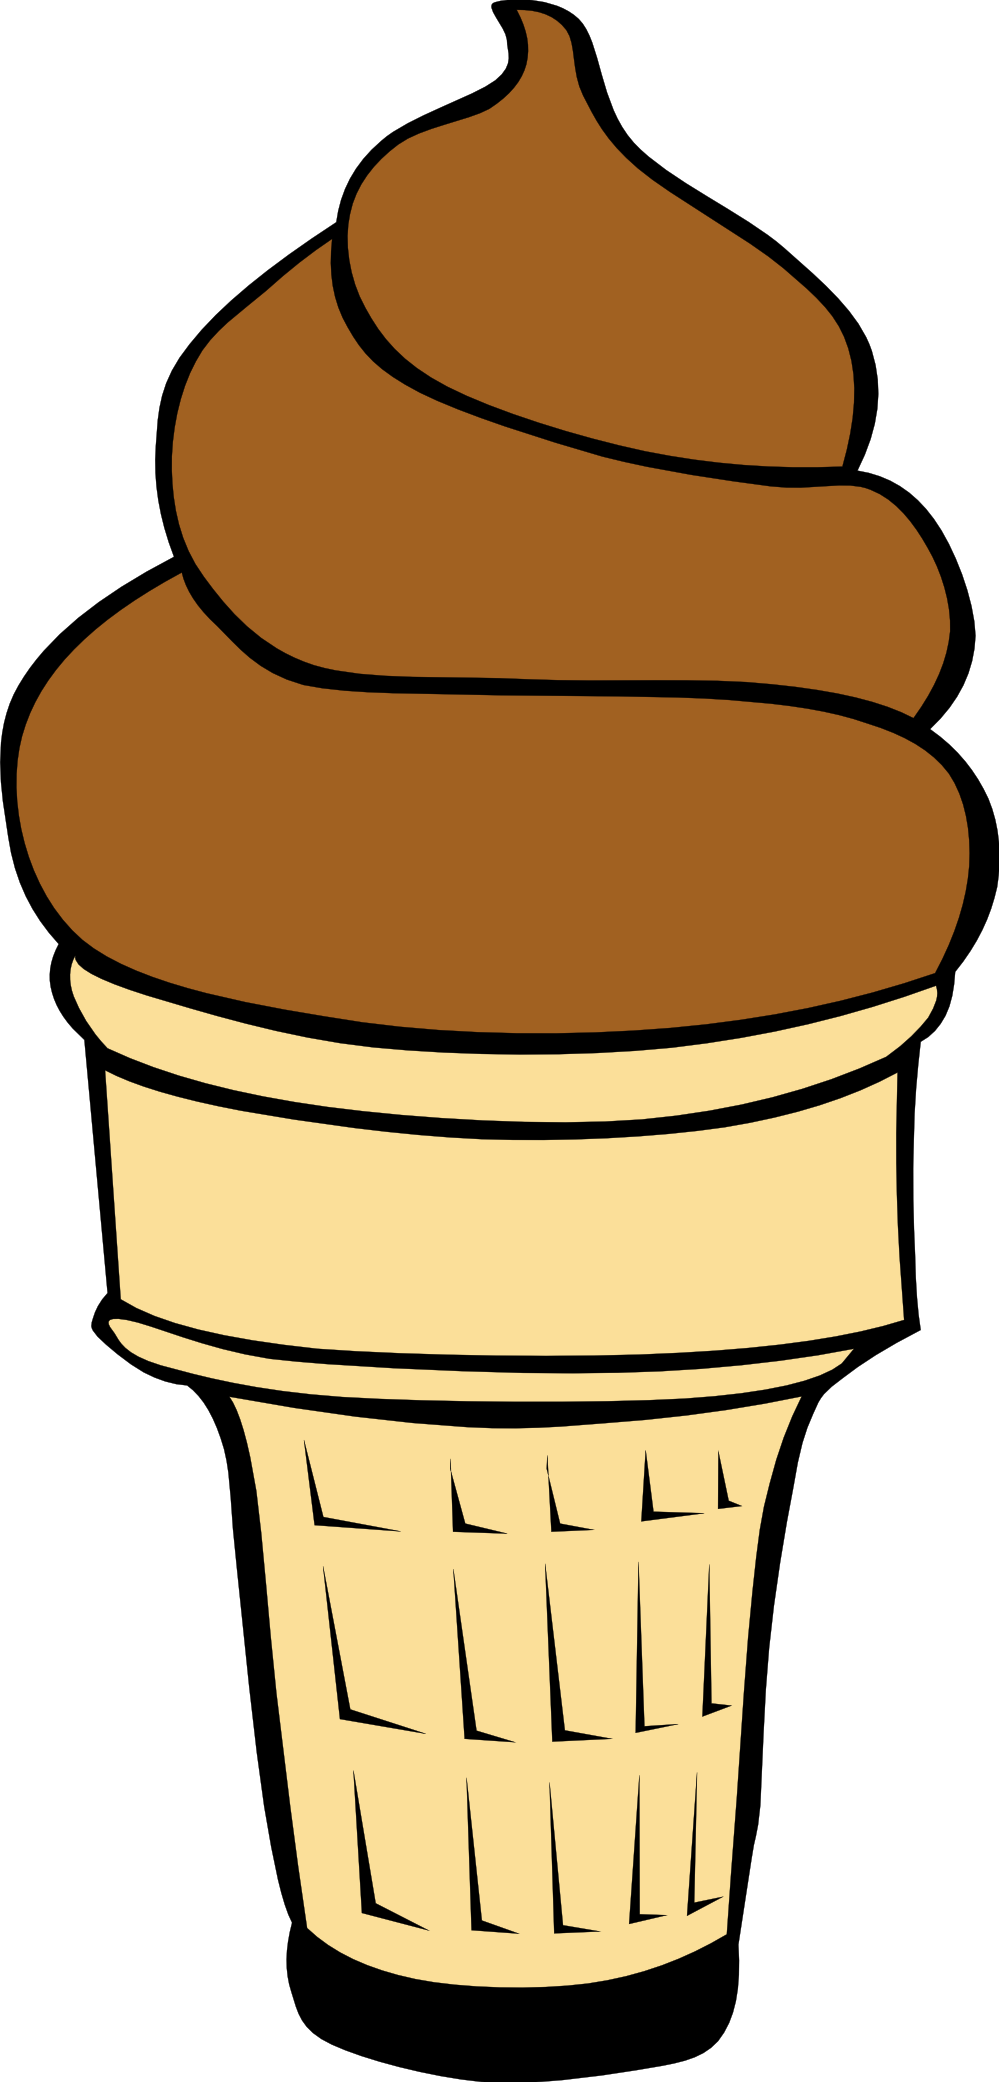 Ice cream cone clipart free images 7 - Clipartix